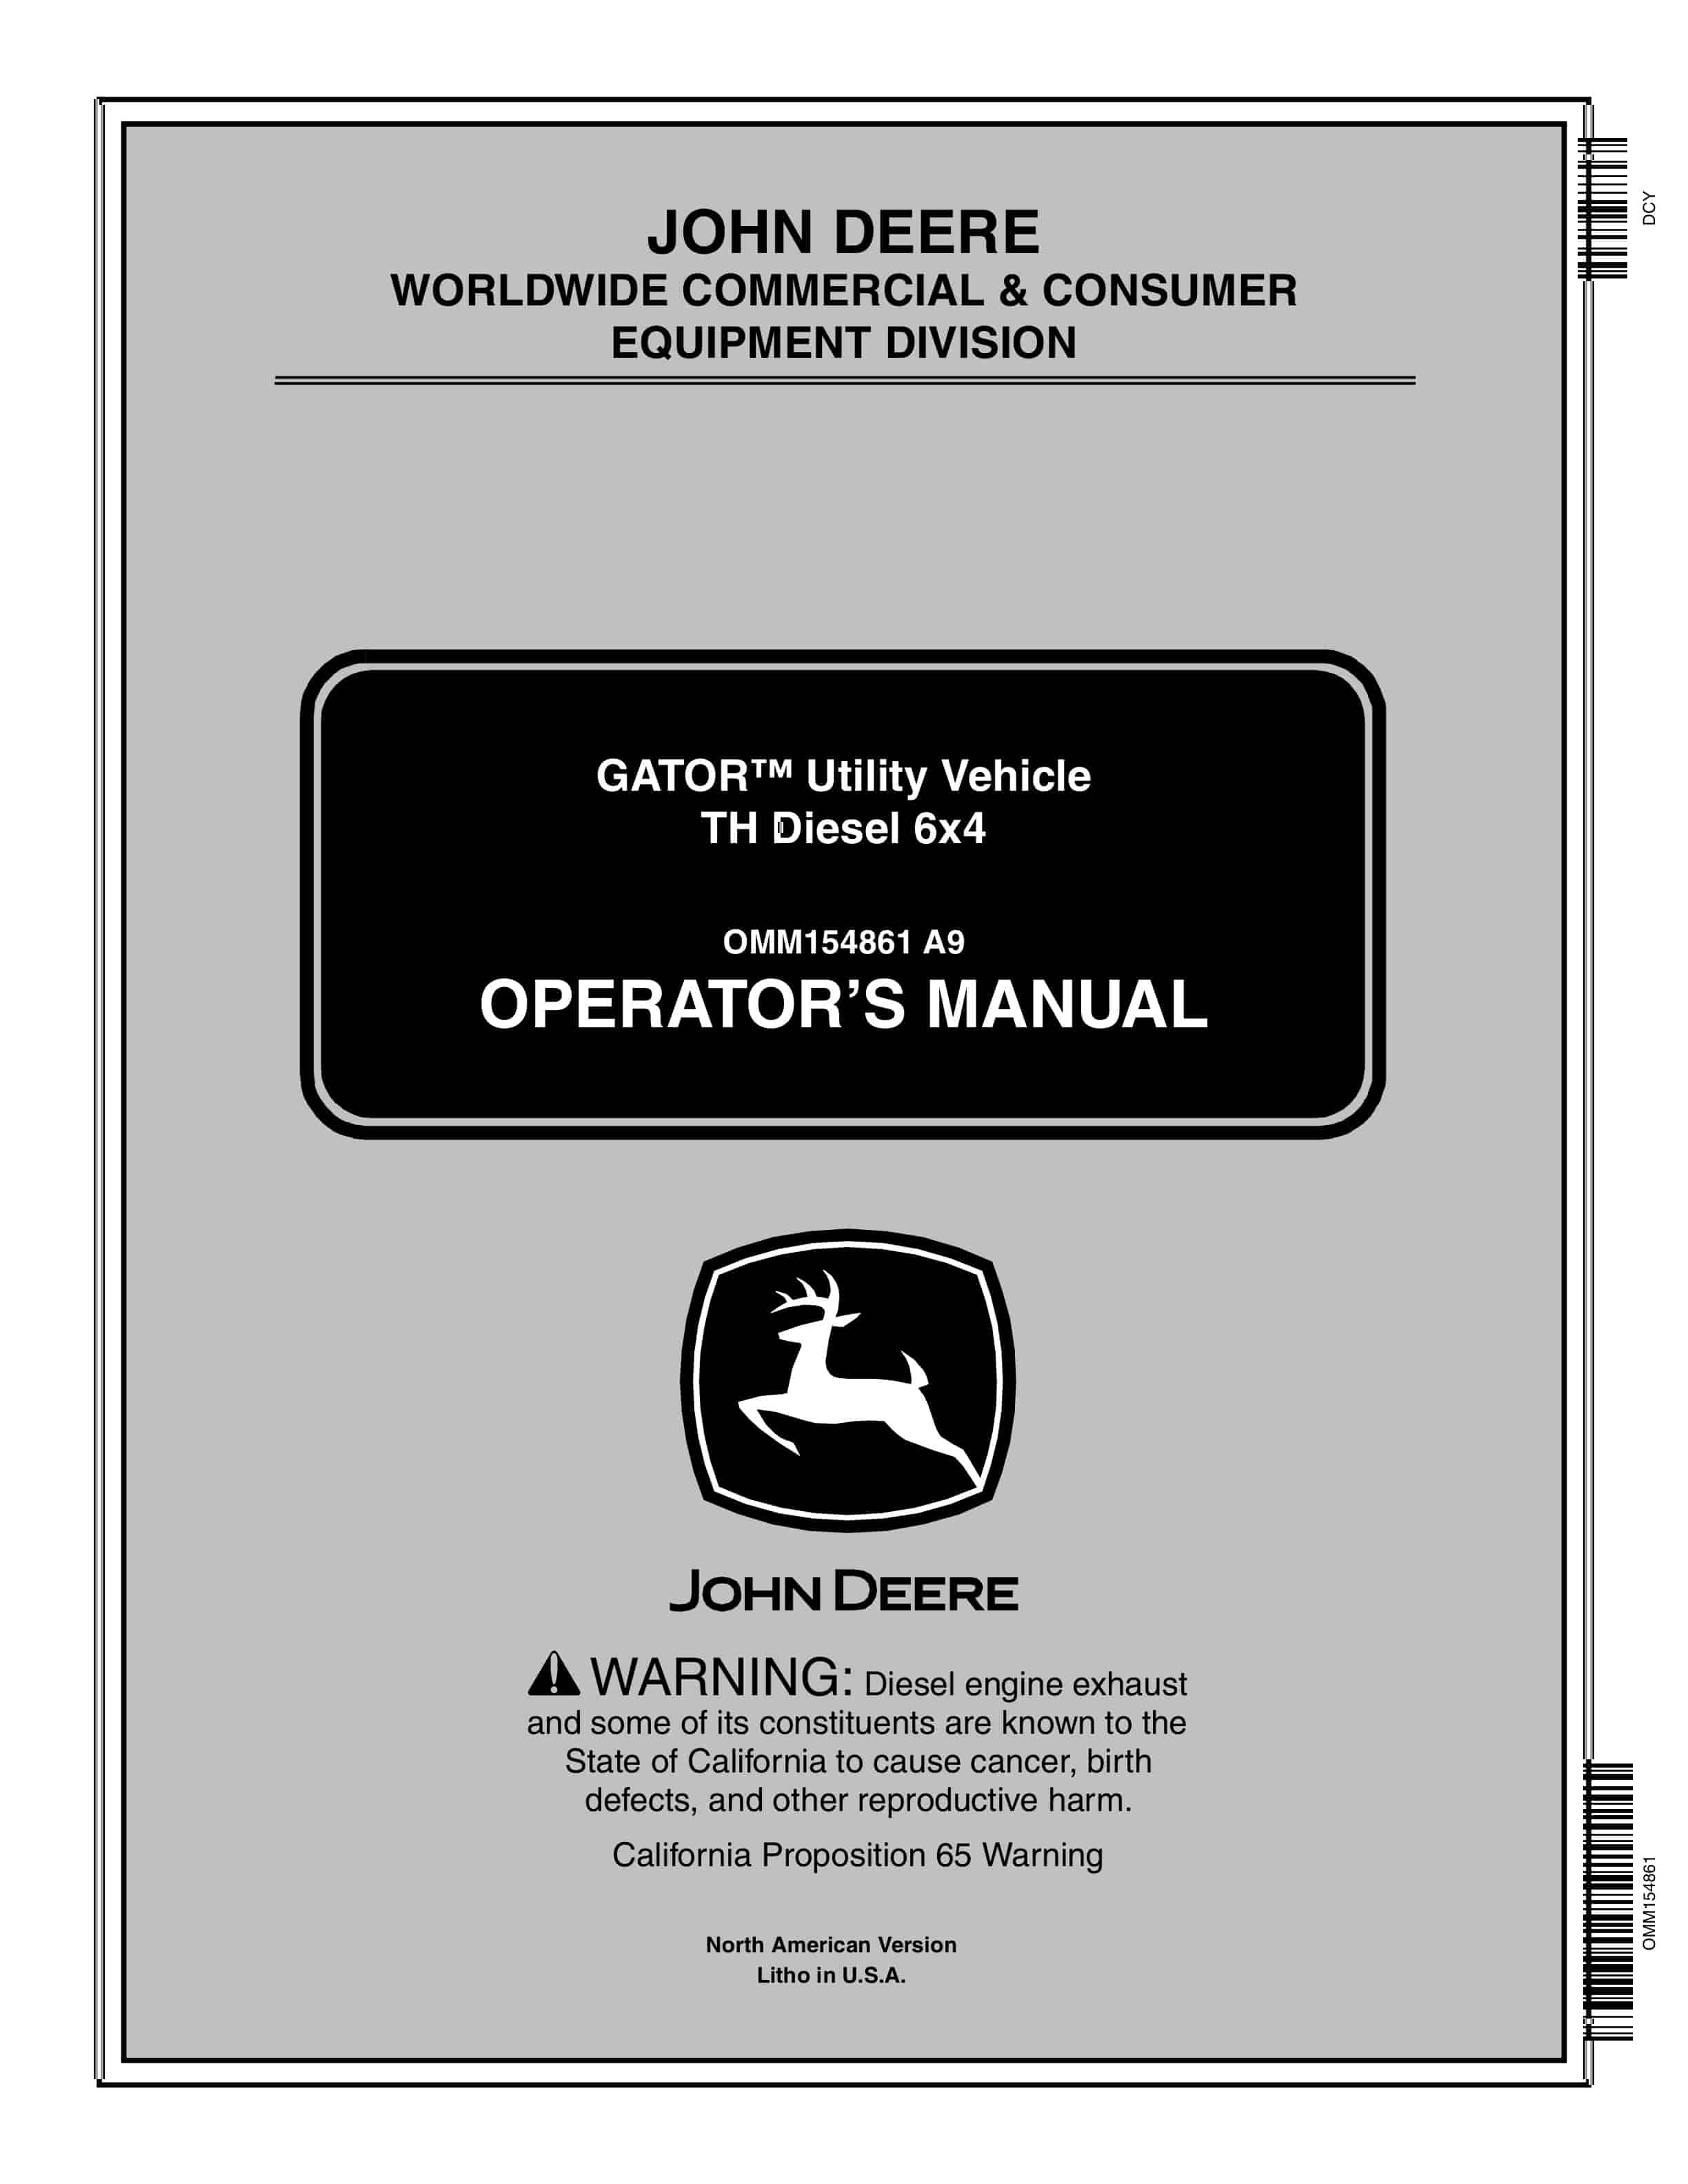 John Deere TH Diesel 6x4 GATOR Utility Vehicles Operator Manual OMM154861 1